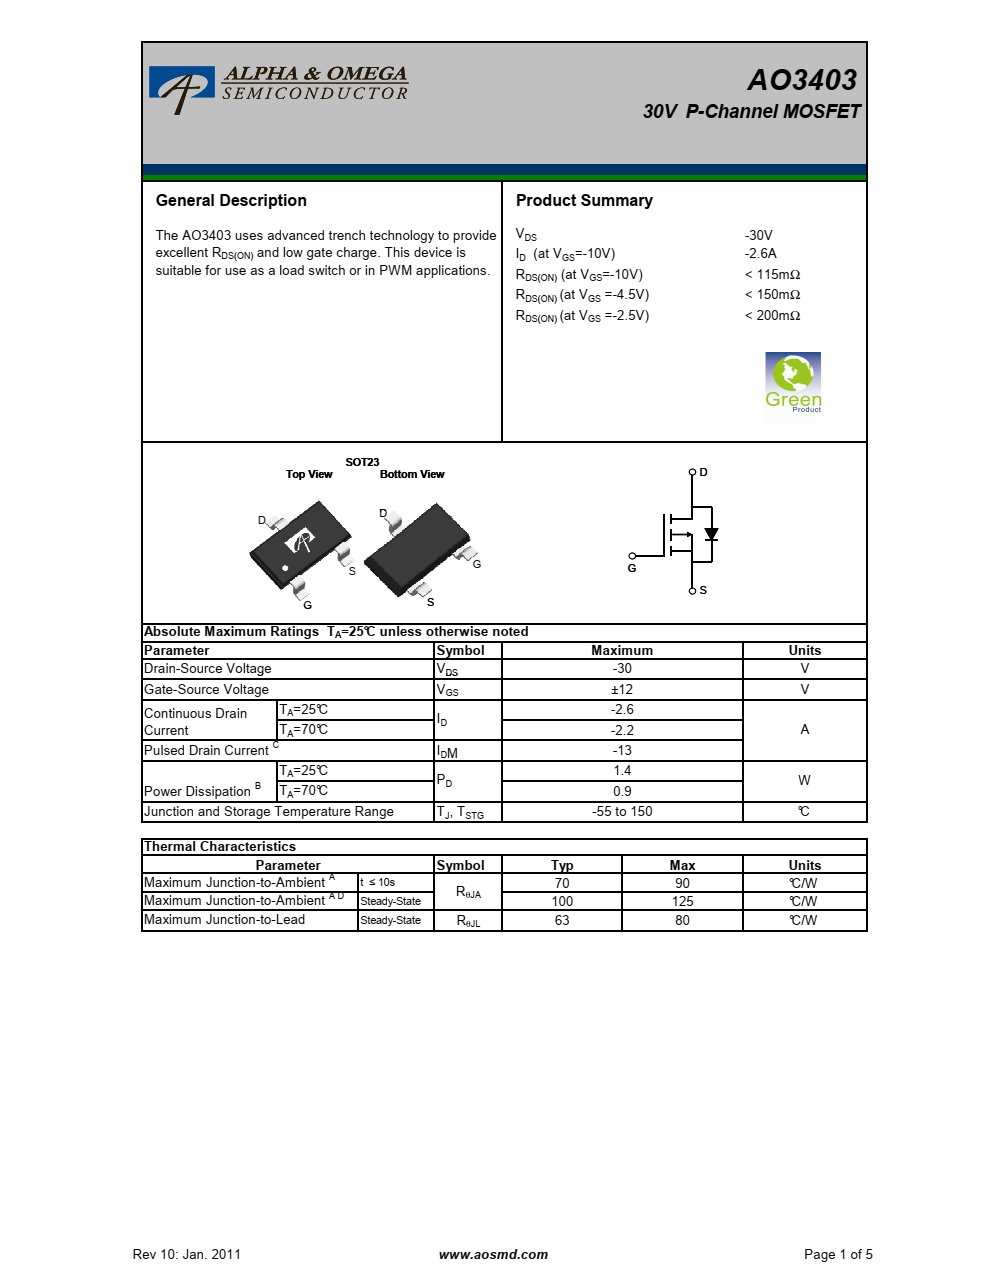 AO3403采用先进的沟槽技术提供出色的RDS（ON）和低栅极电荷